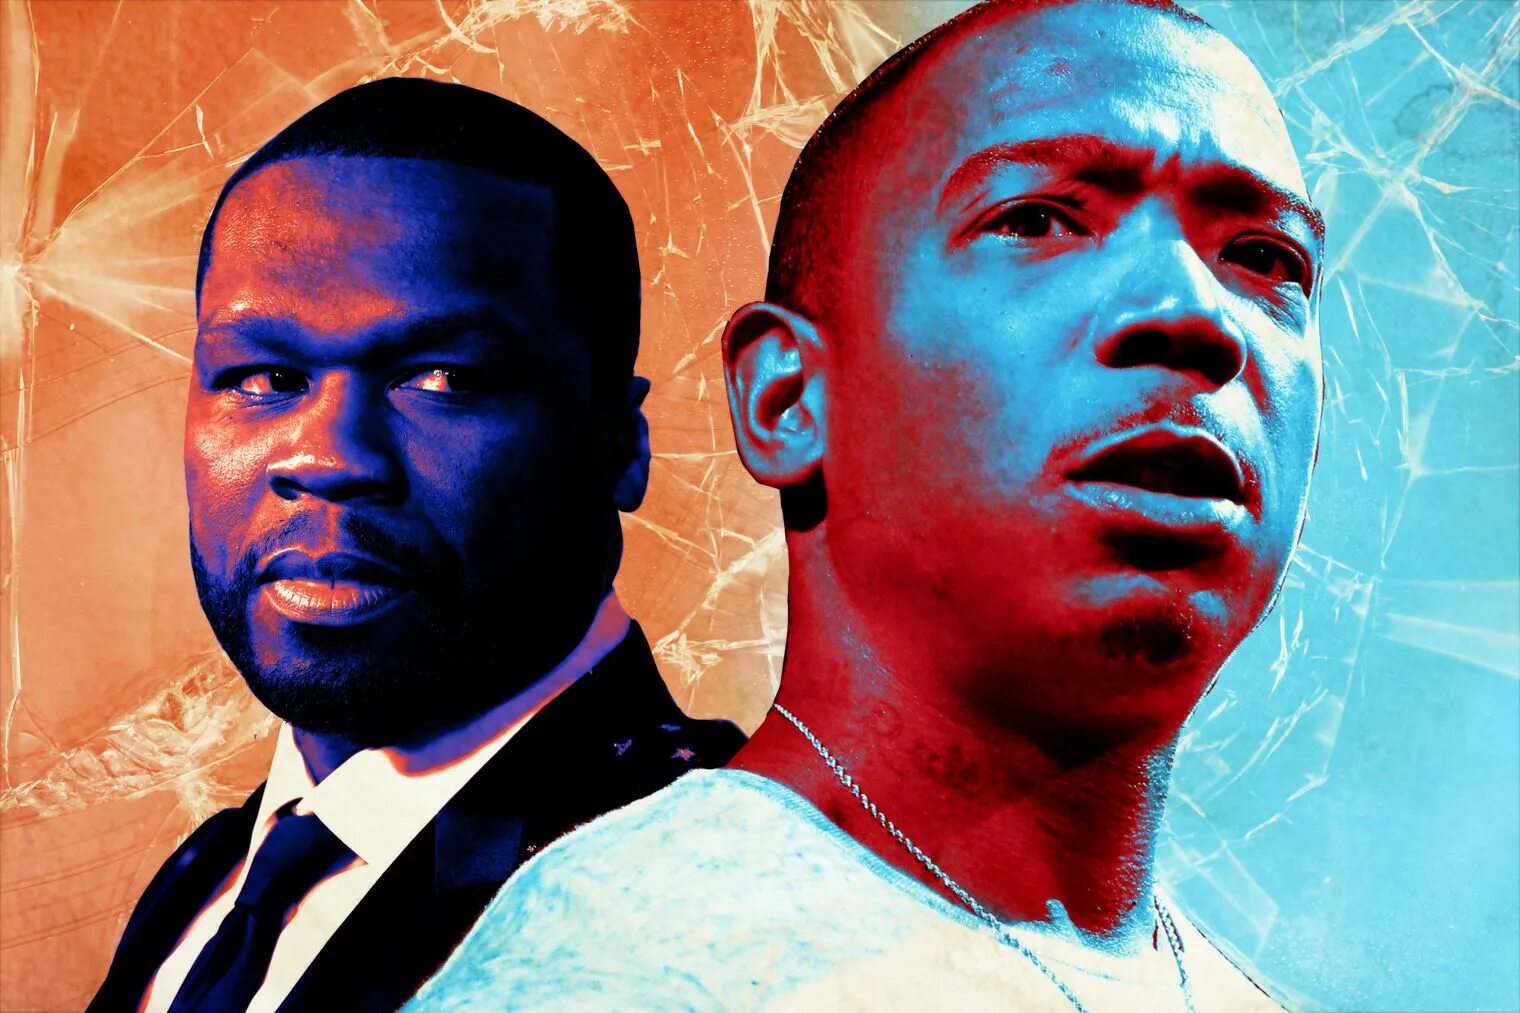 Яркость 50 центов. 50 Cent ja Rule. Необычные картины 50 Cent. 50 Cent Beef. Lala и 50 Cent-.